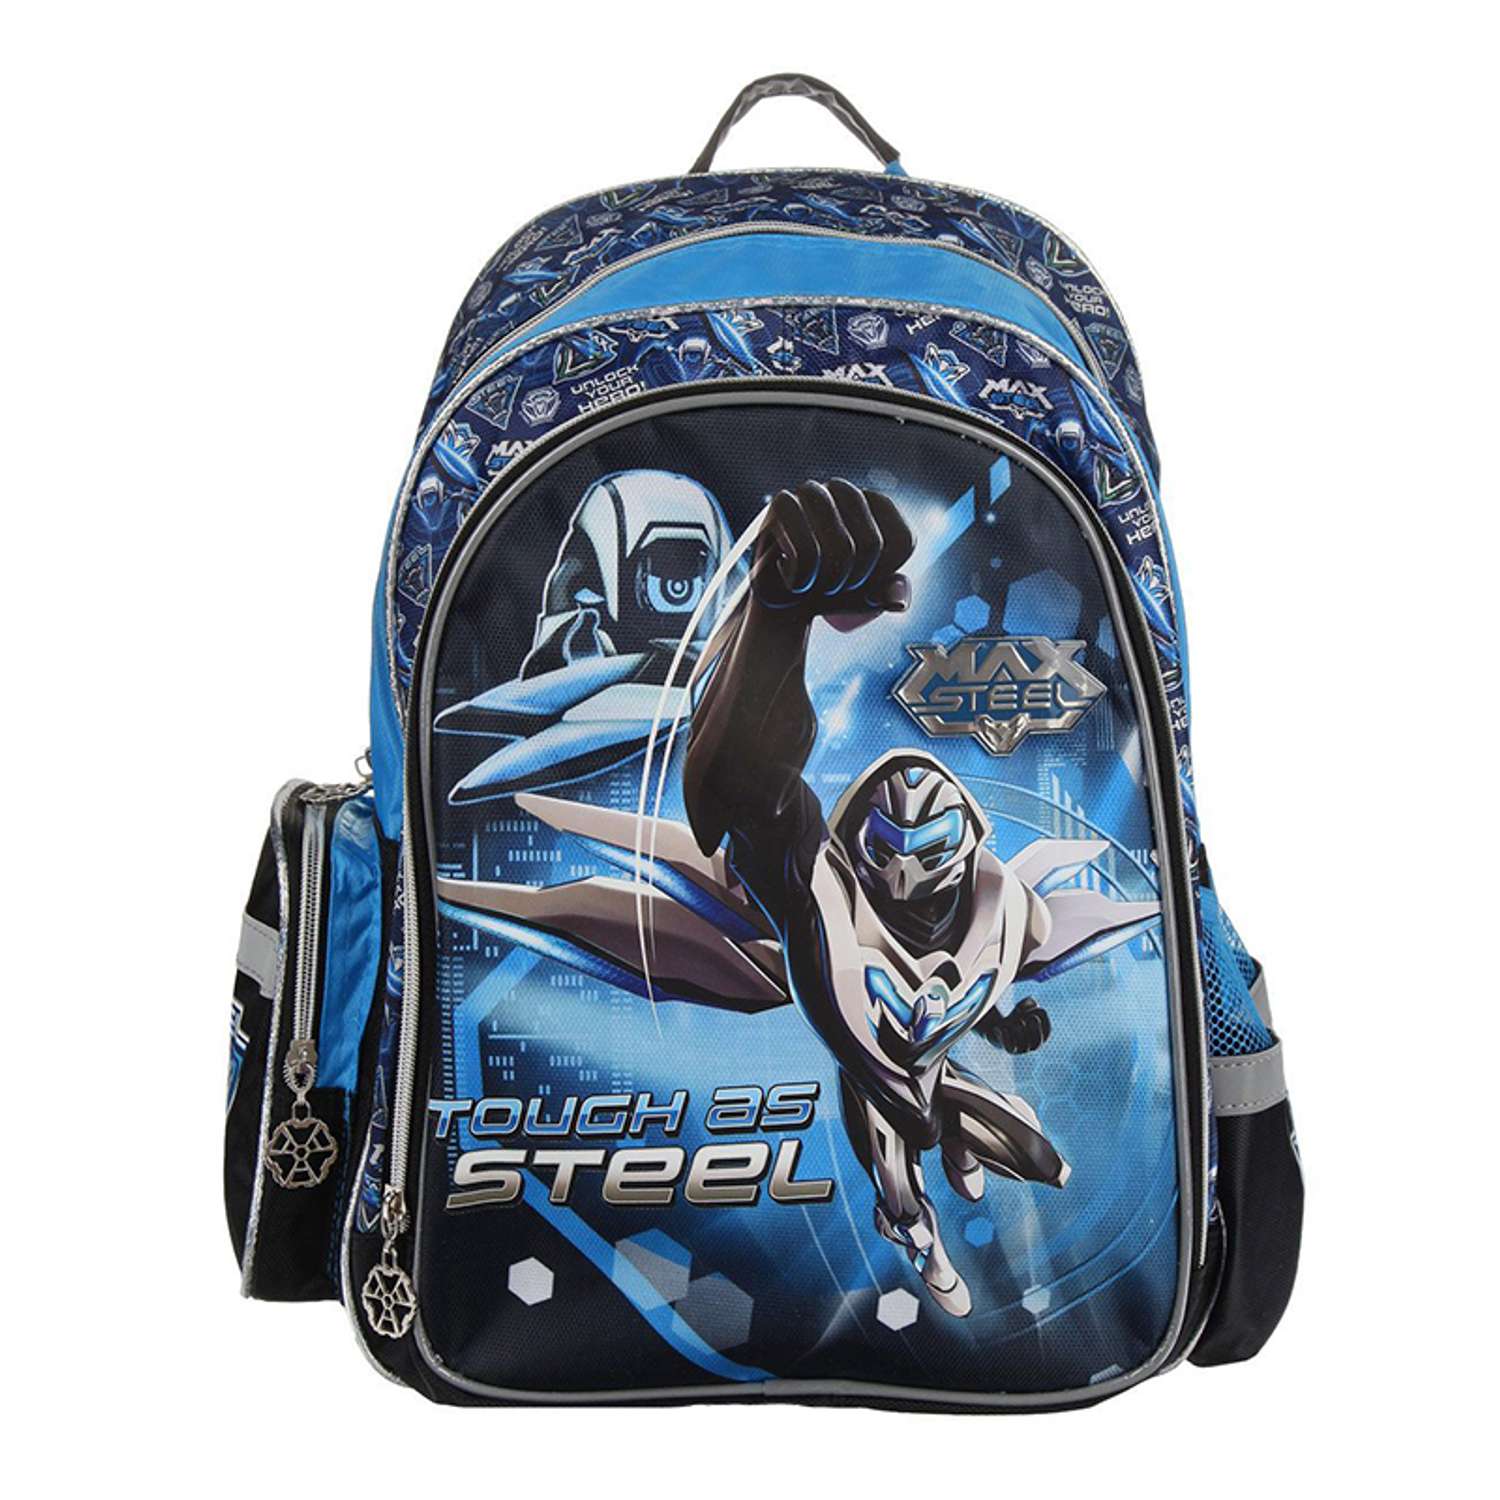 Рюкзак Max Steel школьный (сине/черный) - фото 1